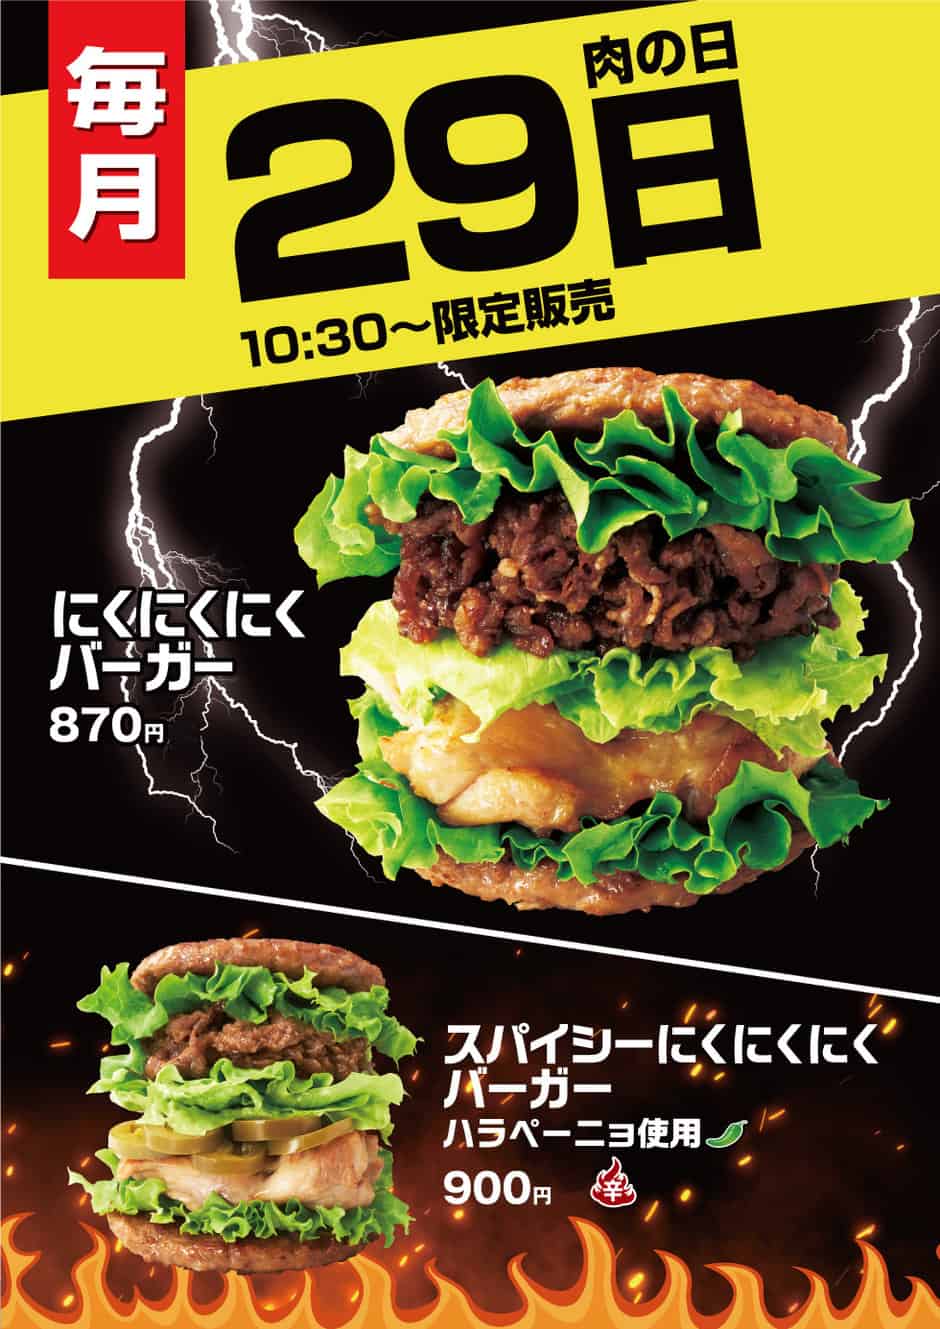 【毎月29日限定】モスバーガー「肉の日限定バーガー」キャンペーン